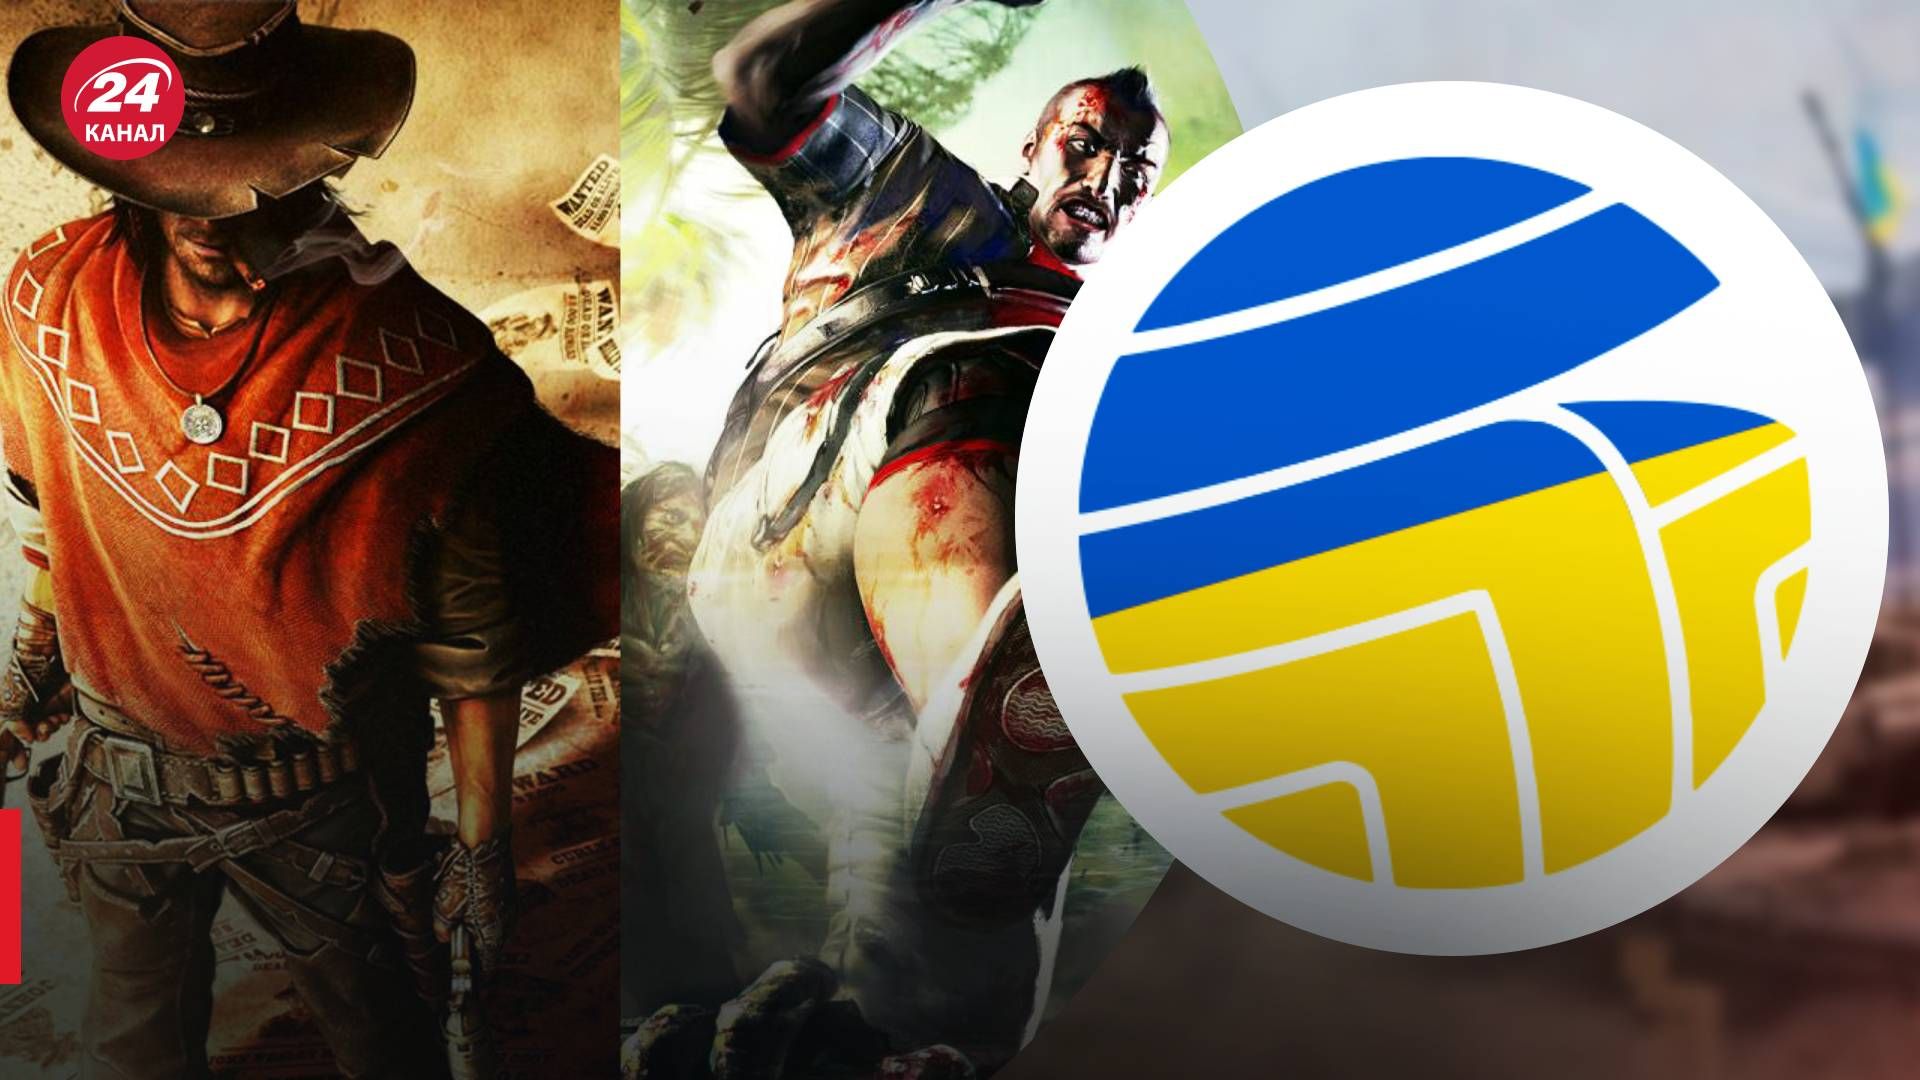 У Steam большая распродажа игр польского издателя: скидки до 90%